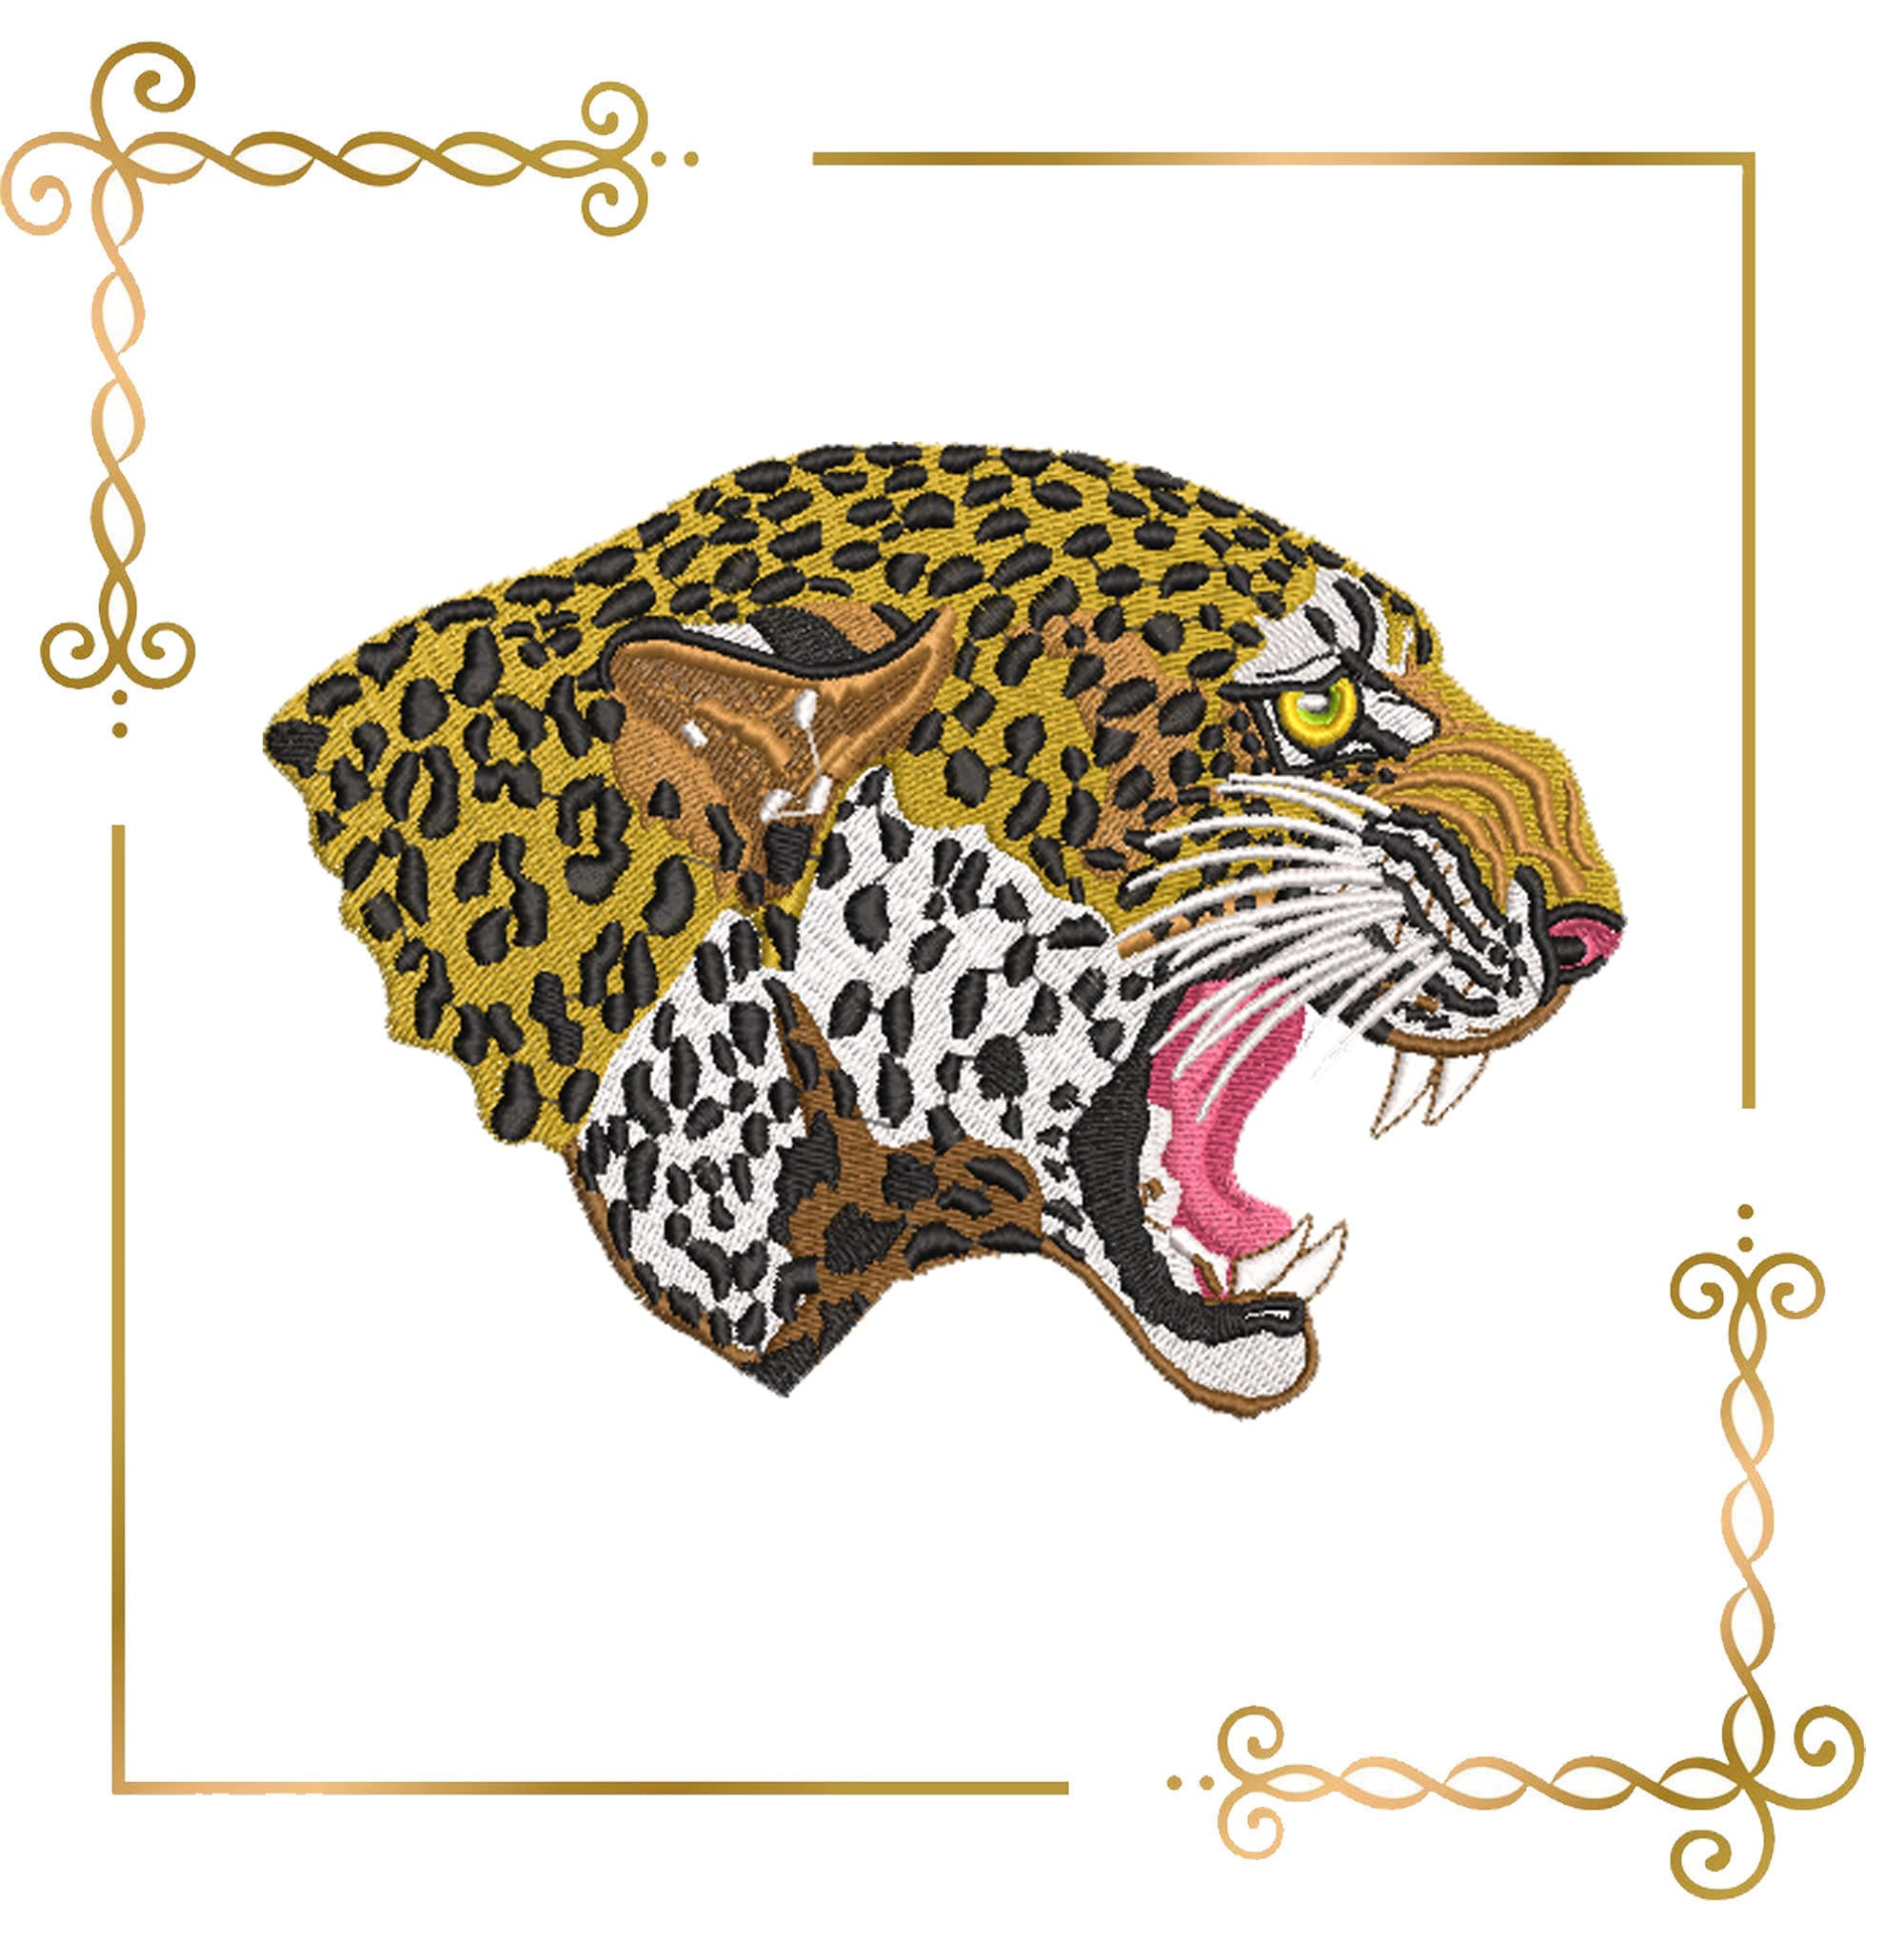 Cheetah Head Middle High School Sports Team Mascot